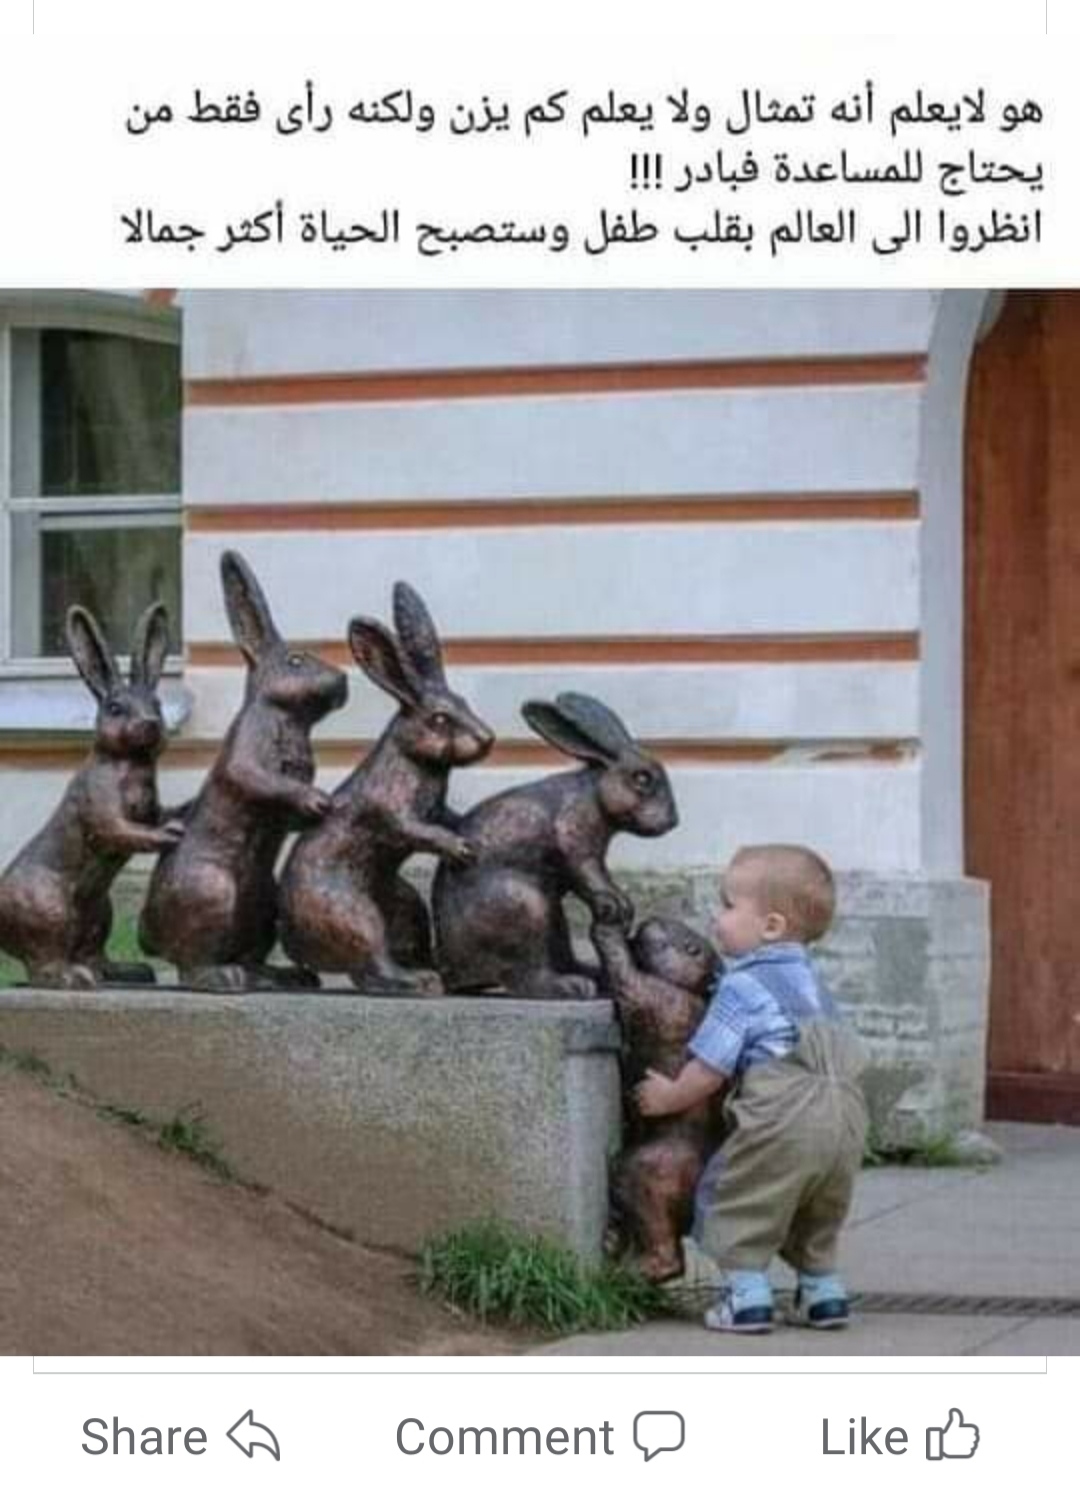 صورة ملتقطة احترافية لطفل يساعد تمثال ارنب على الصعود لرفاقه